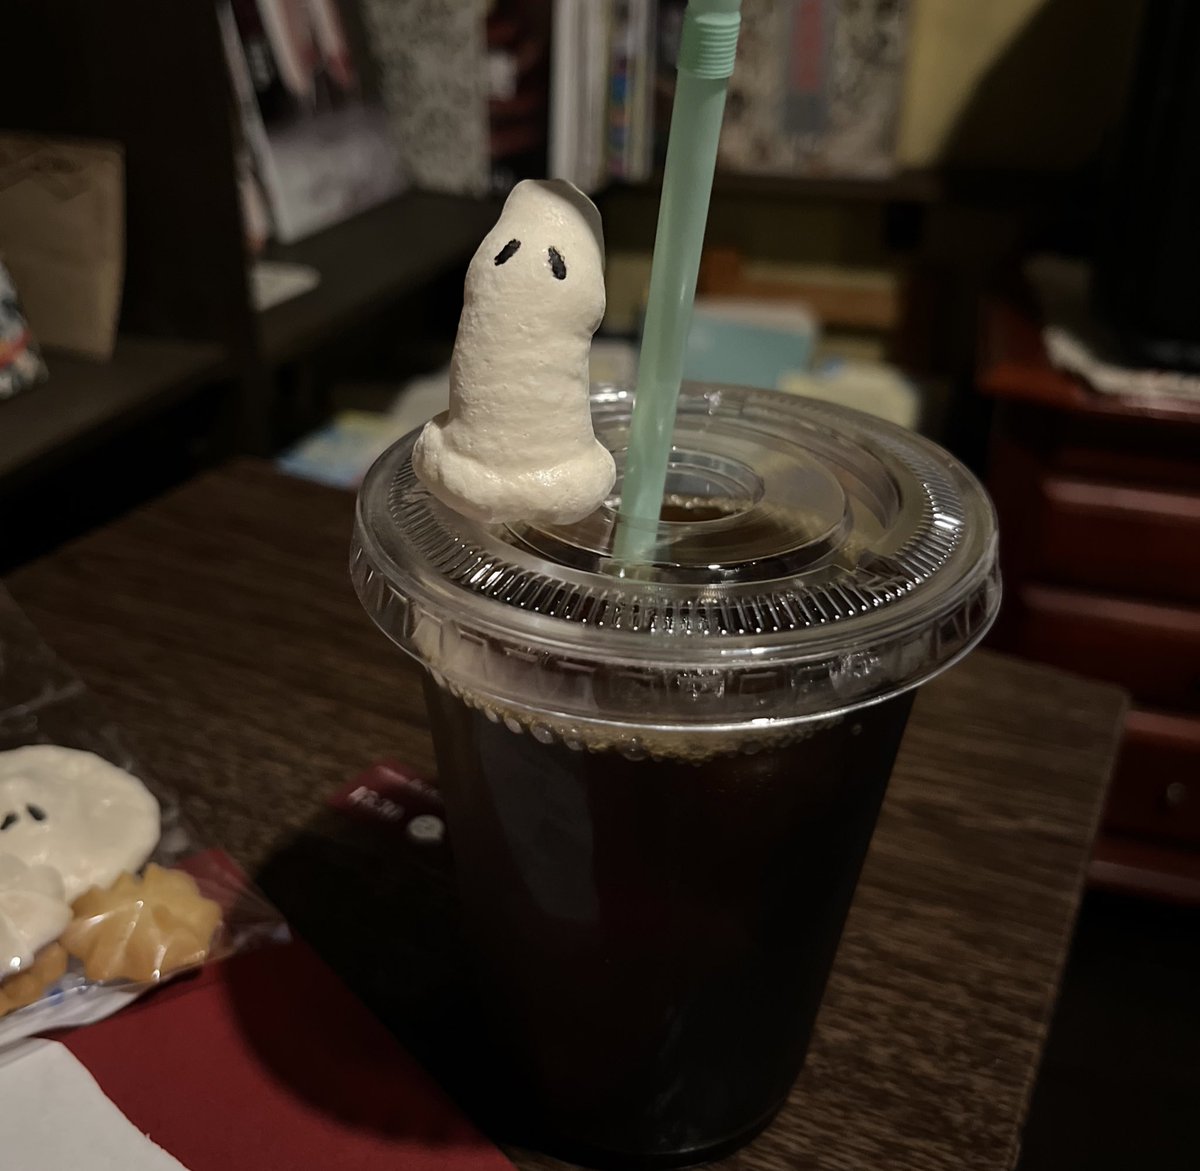 カフェでA ghost story見てきた
お菓子ゴースト最高w